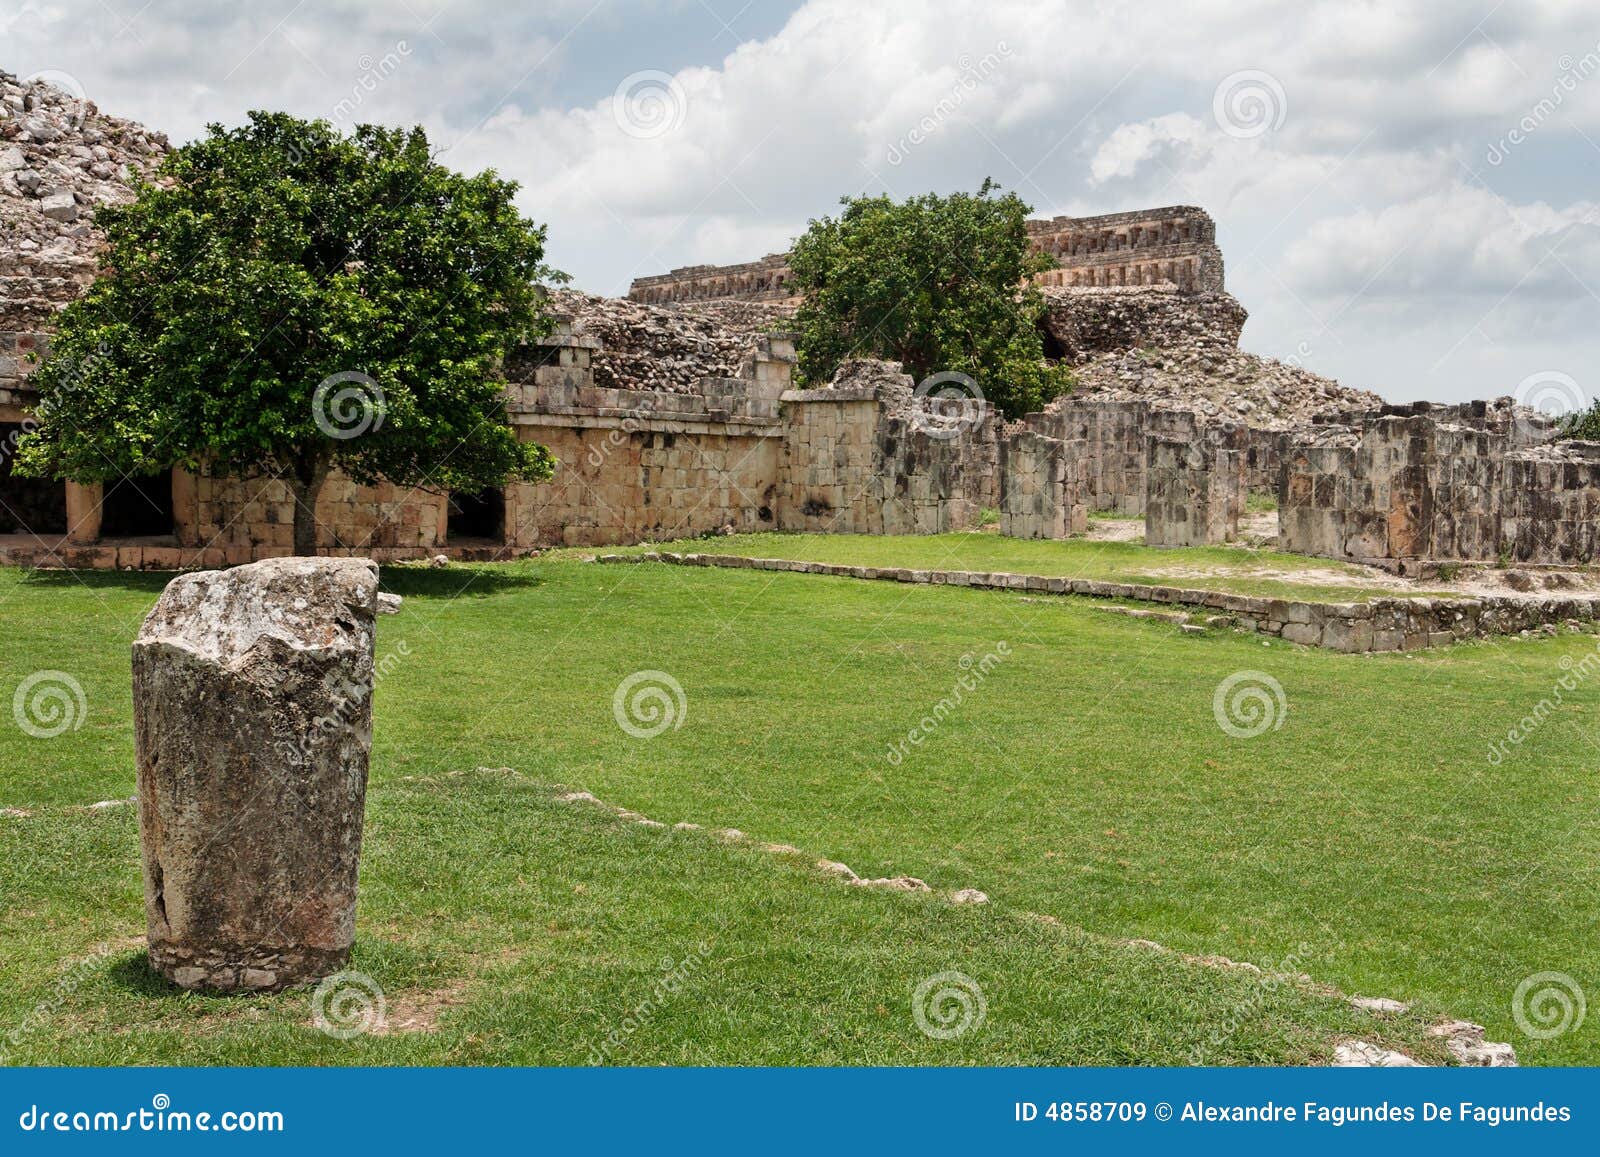 mayan temple in kabah yucatan mexico